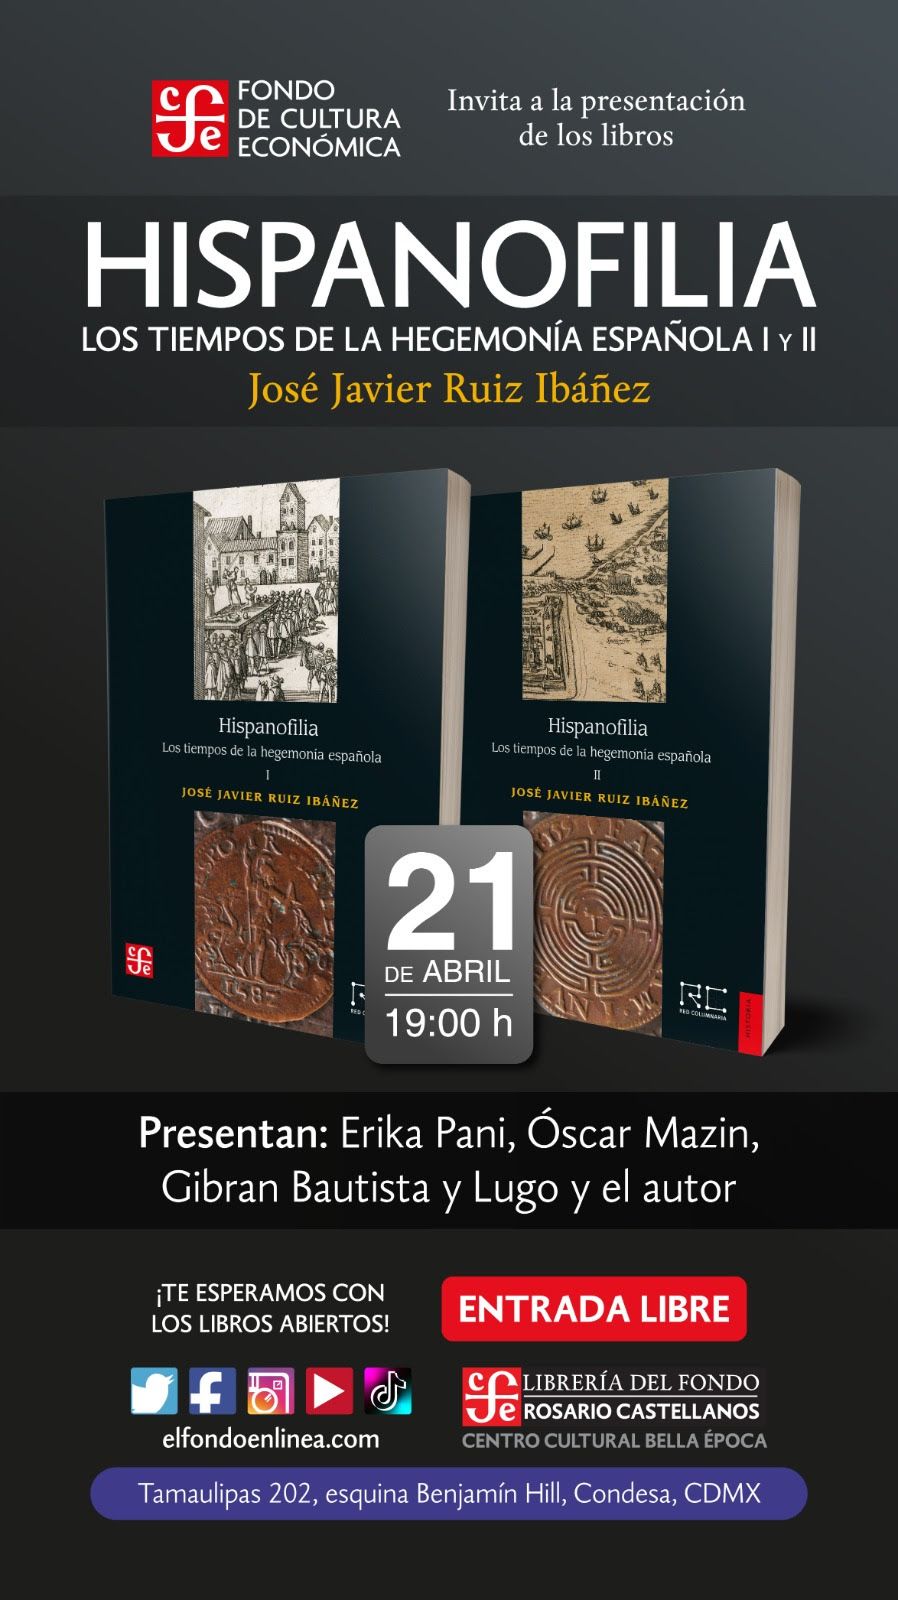 El escritor español José Javier Ruiz Ibáñez presentará Hispanofilia, los tiempos de la hegemonía española, editado por el FCE